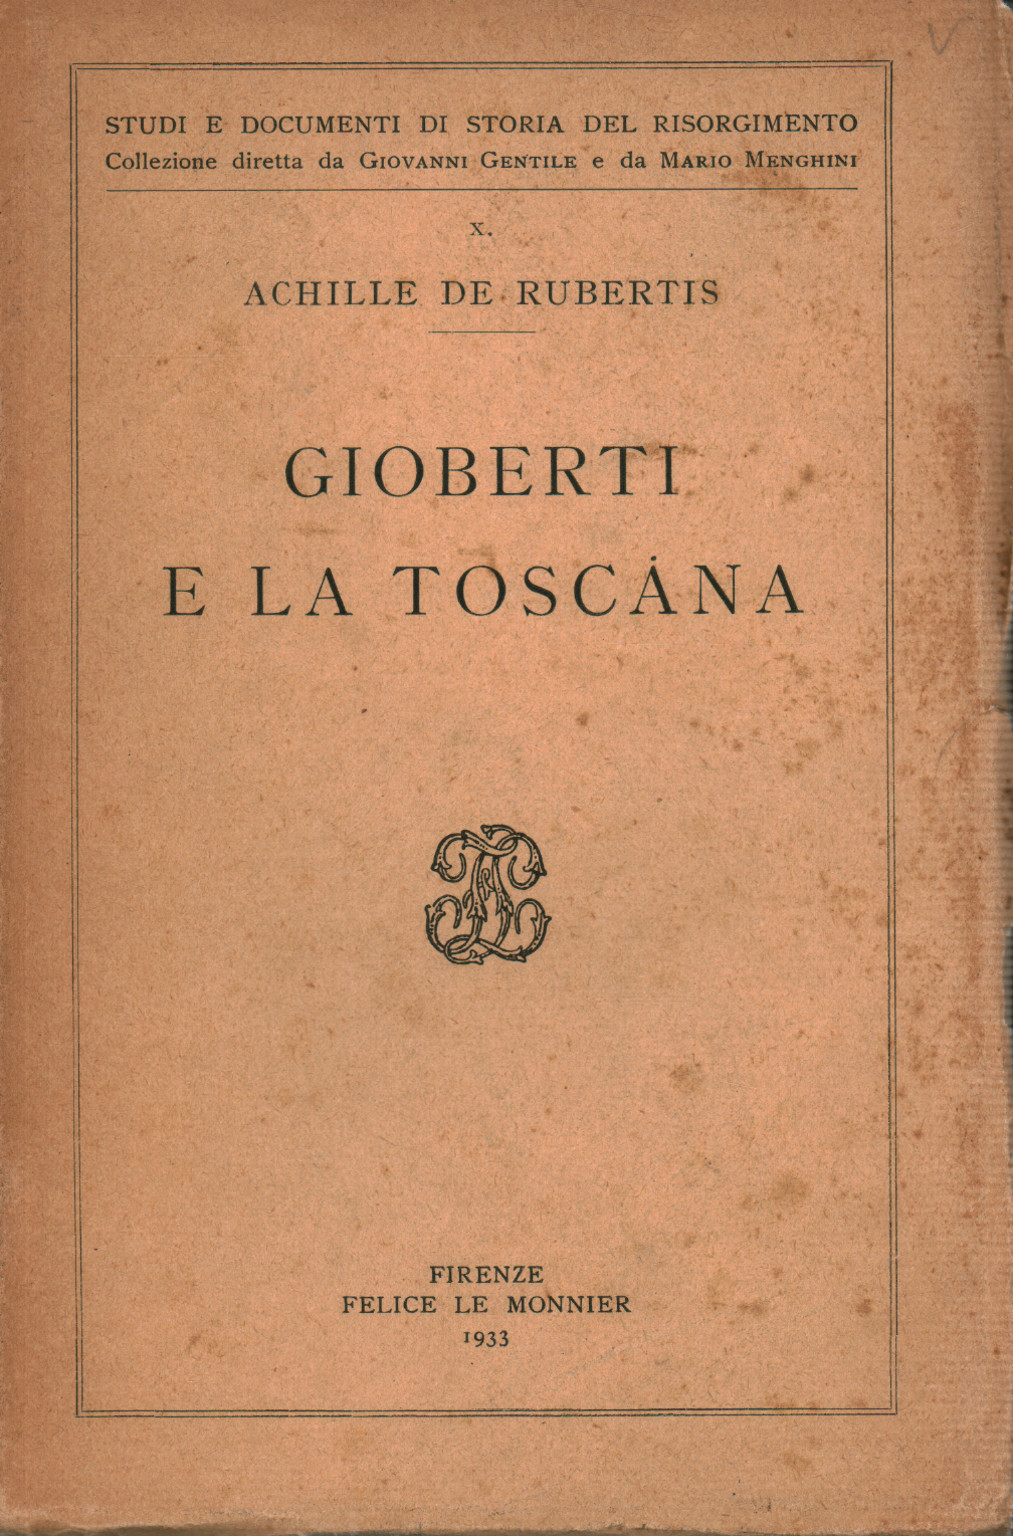 Gioberti e la Toscana, s.a.